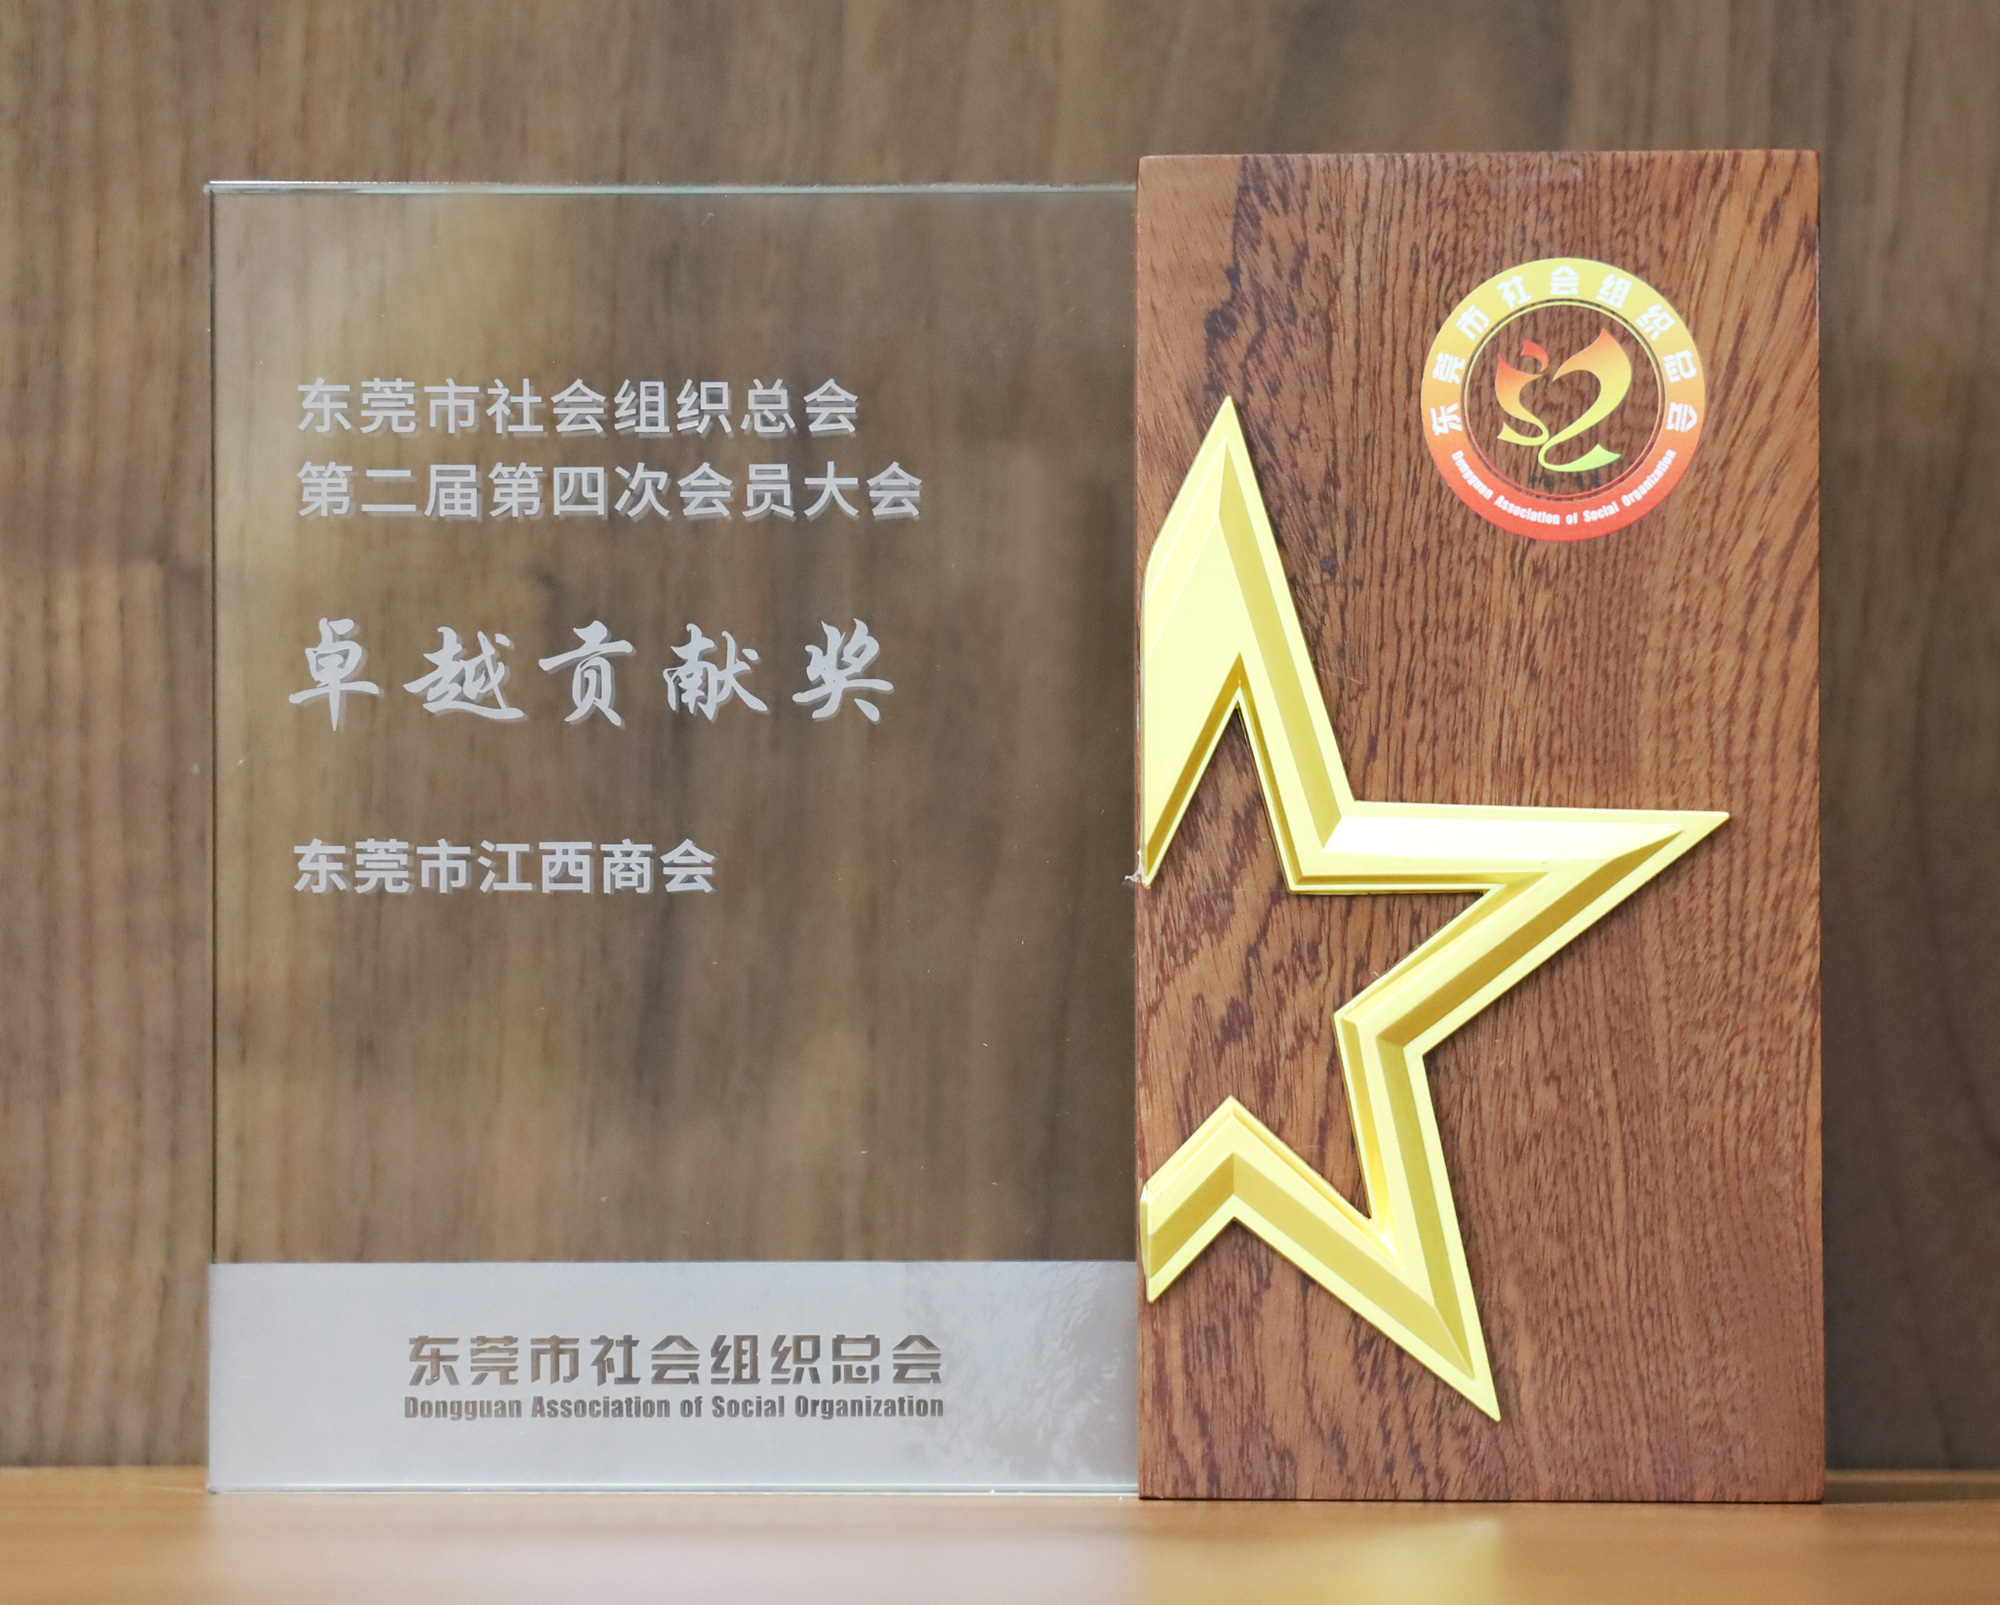 东莞市社会组织总会第二届第四次会员大会卓越贡献奖